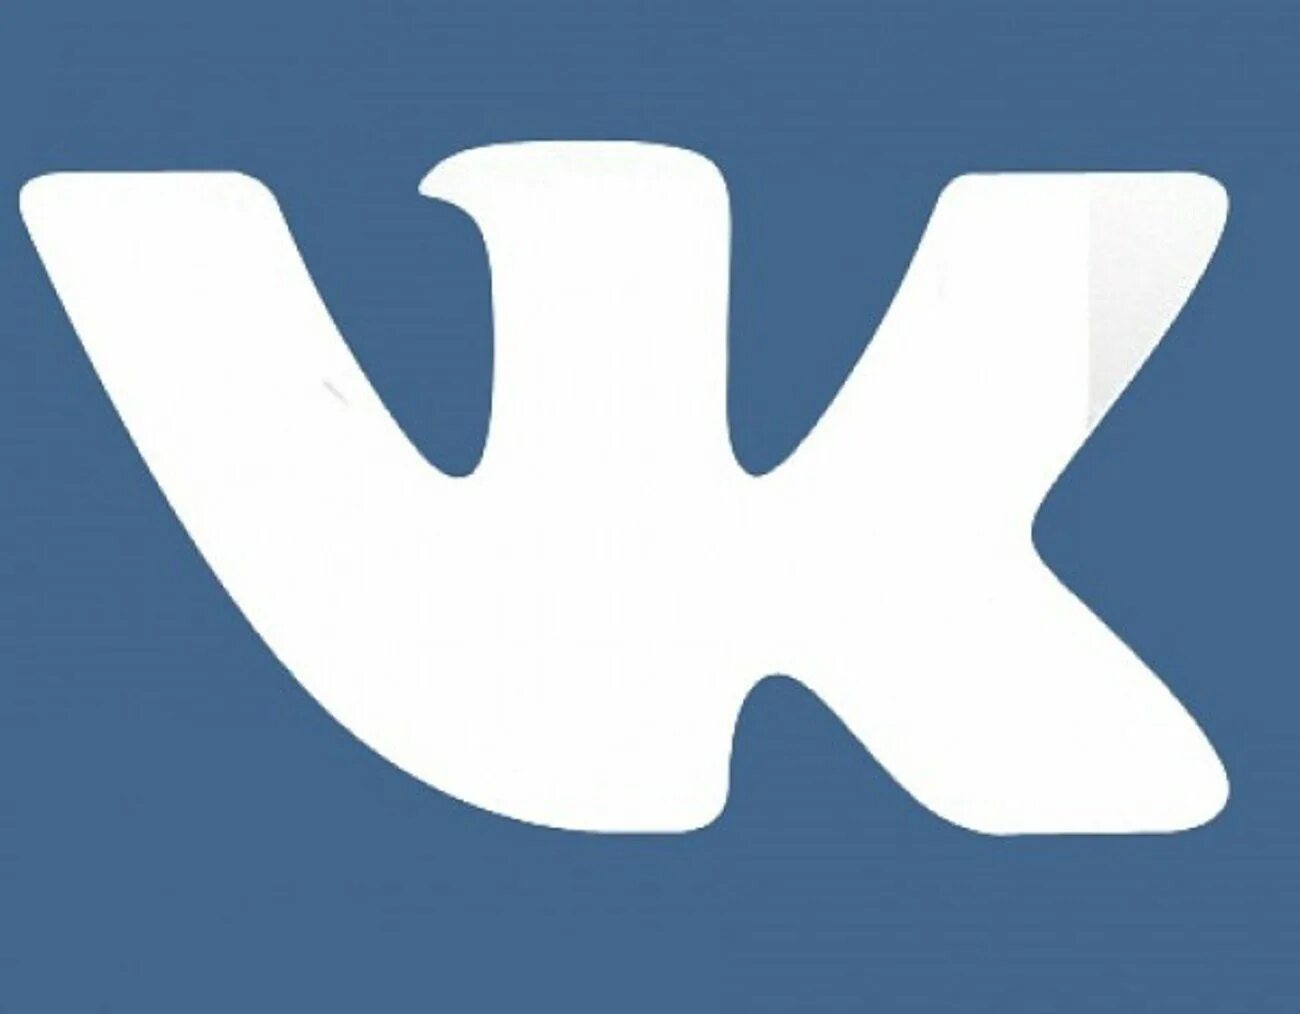 Vk com atomicrust. Логотип ВК. Значок ВК черный. Иконка ВК 2022. Иконка ВК без фона.